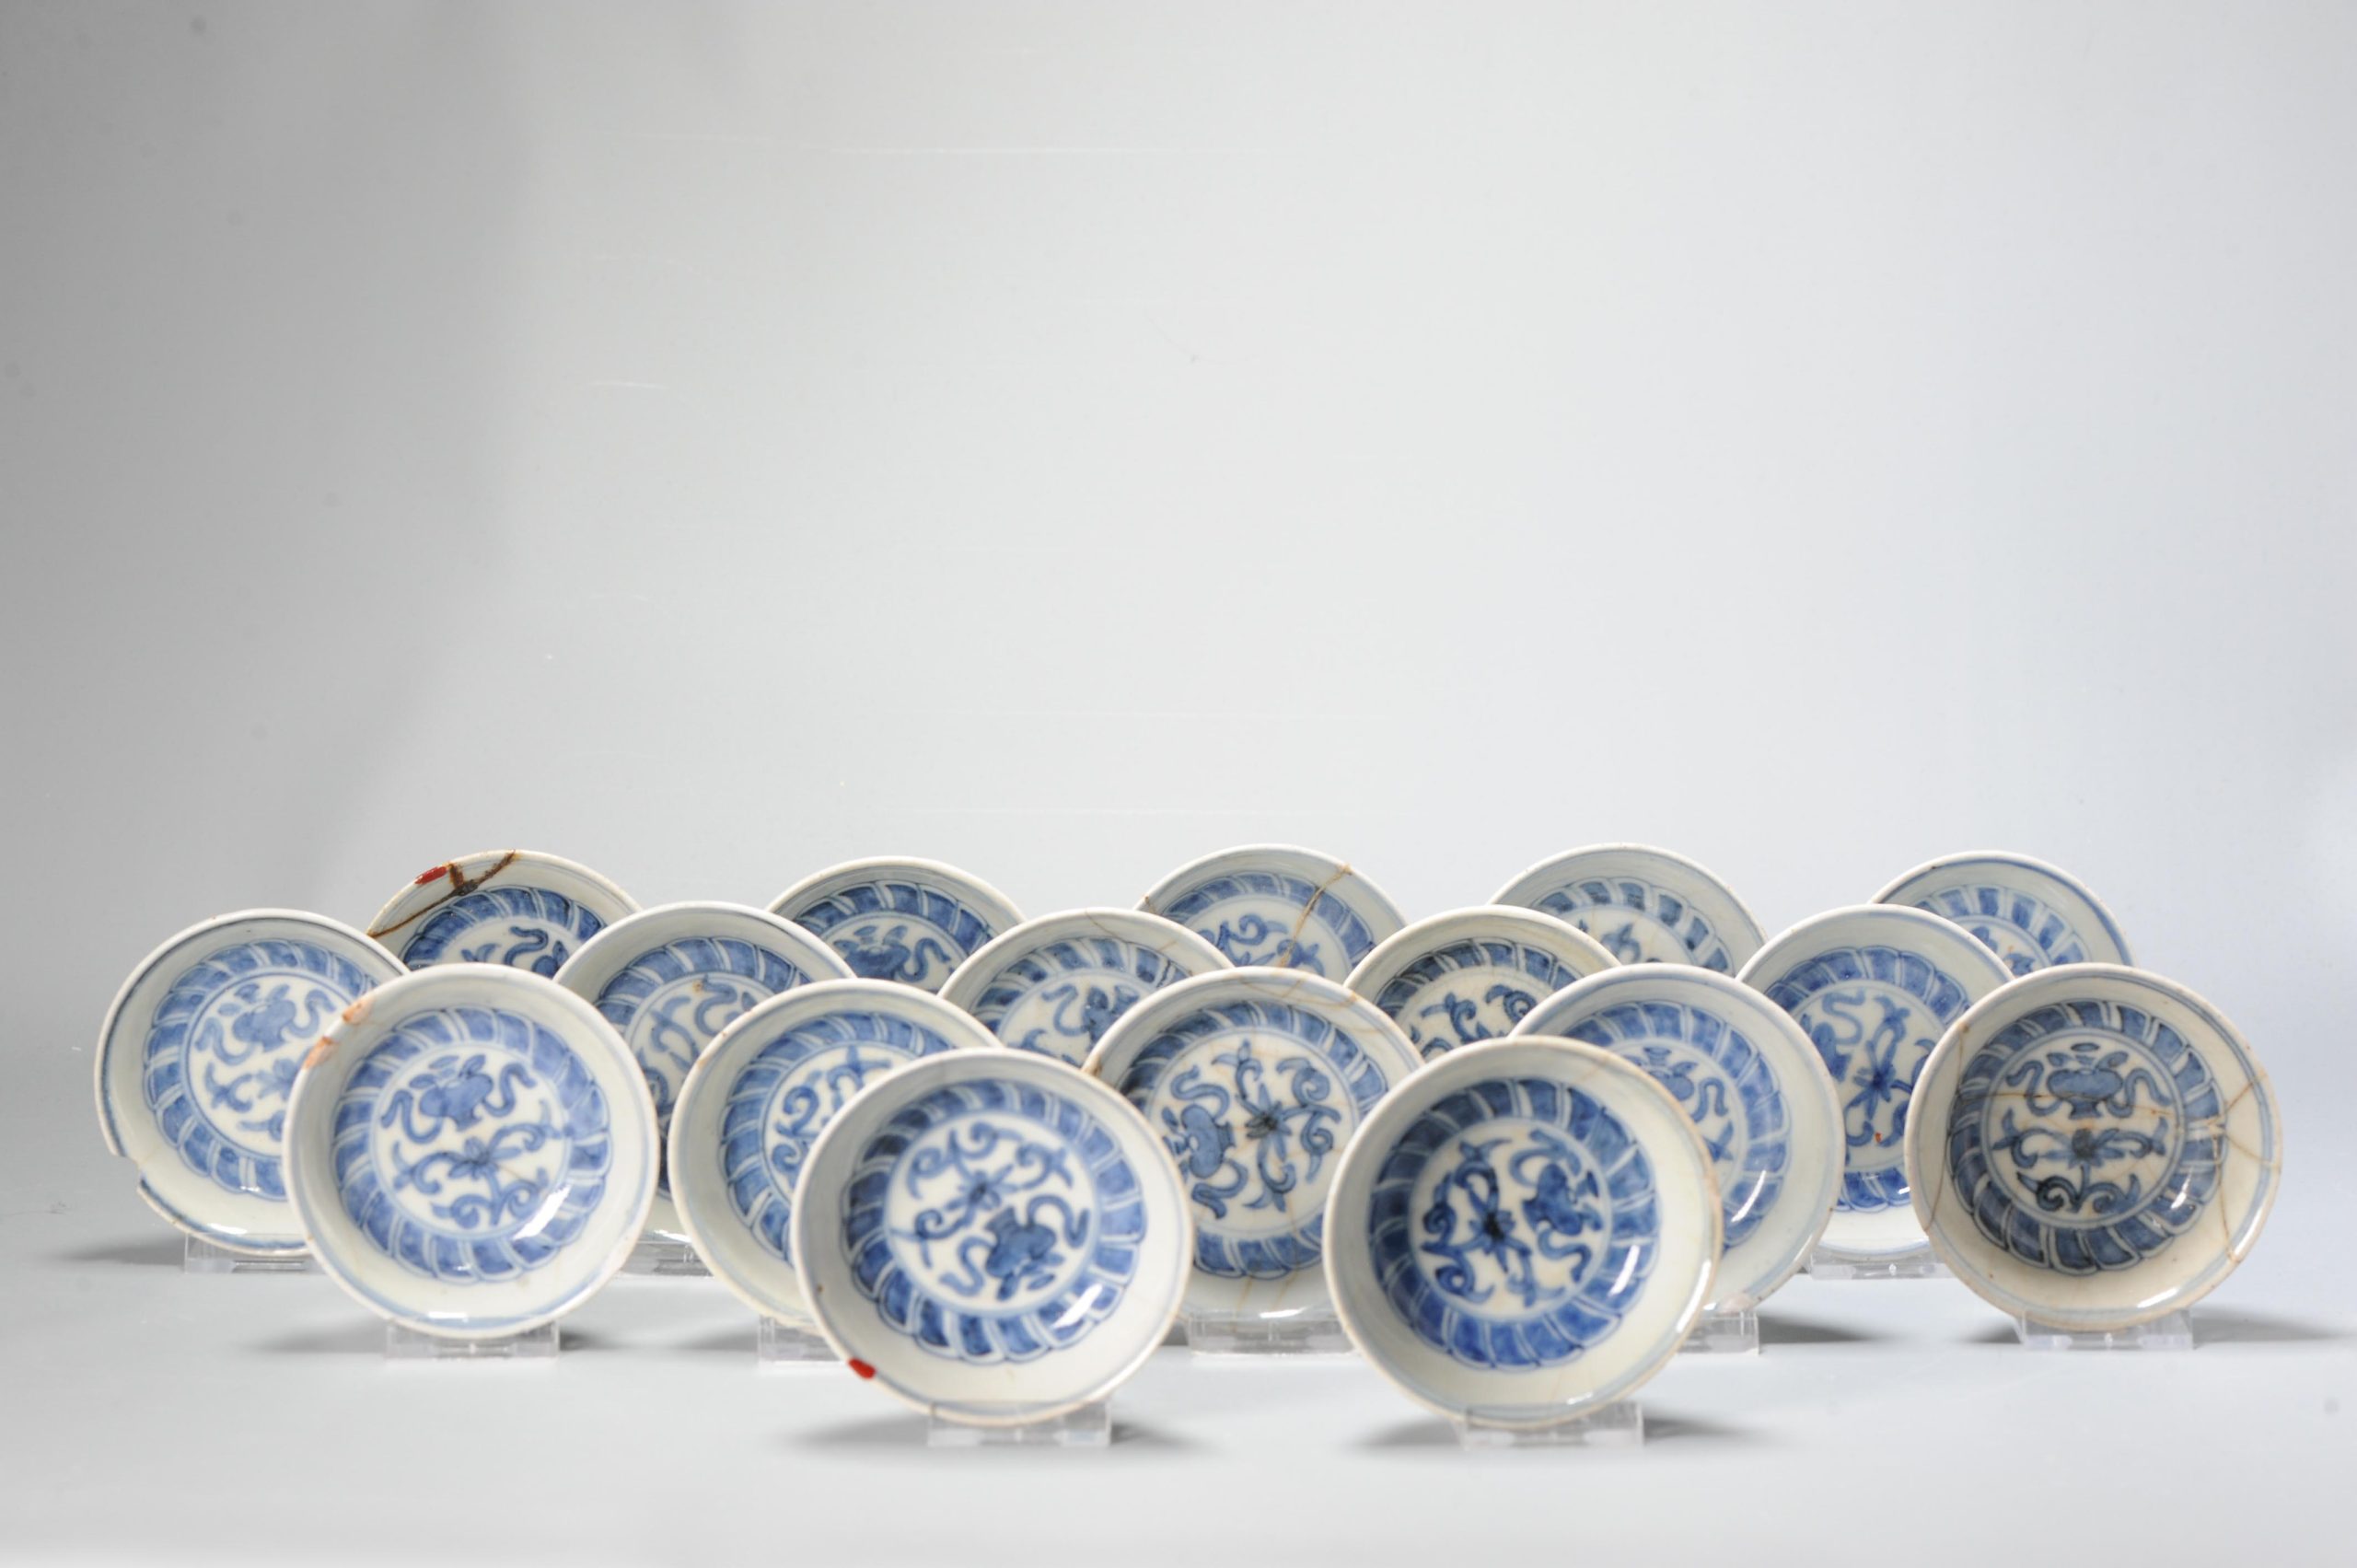 Large Set Kosometsuke Antique Chinese 17c Ming Dynasty Plates China Porcelain Flowers